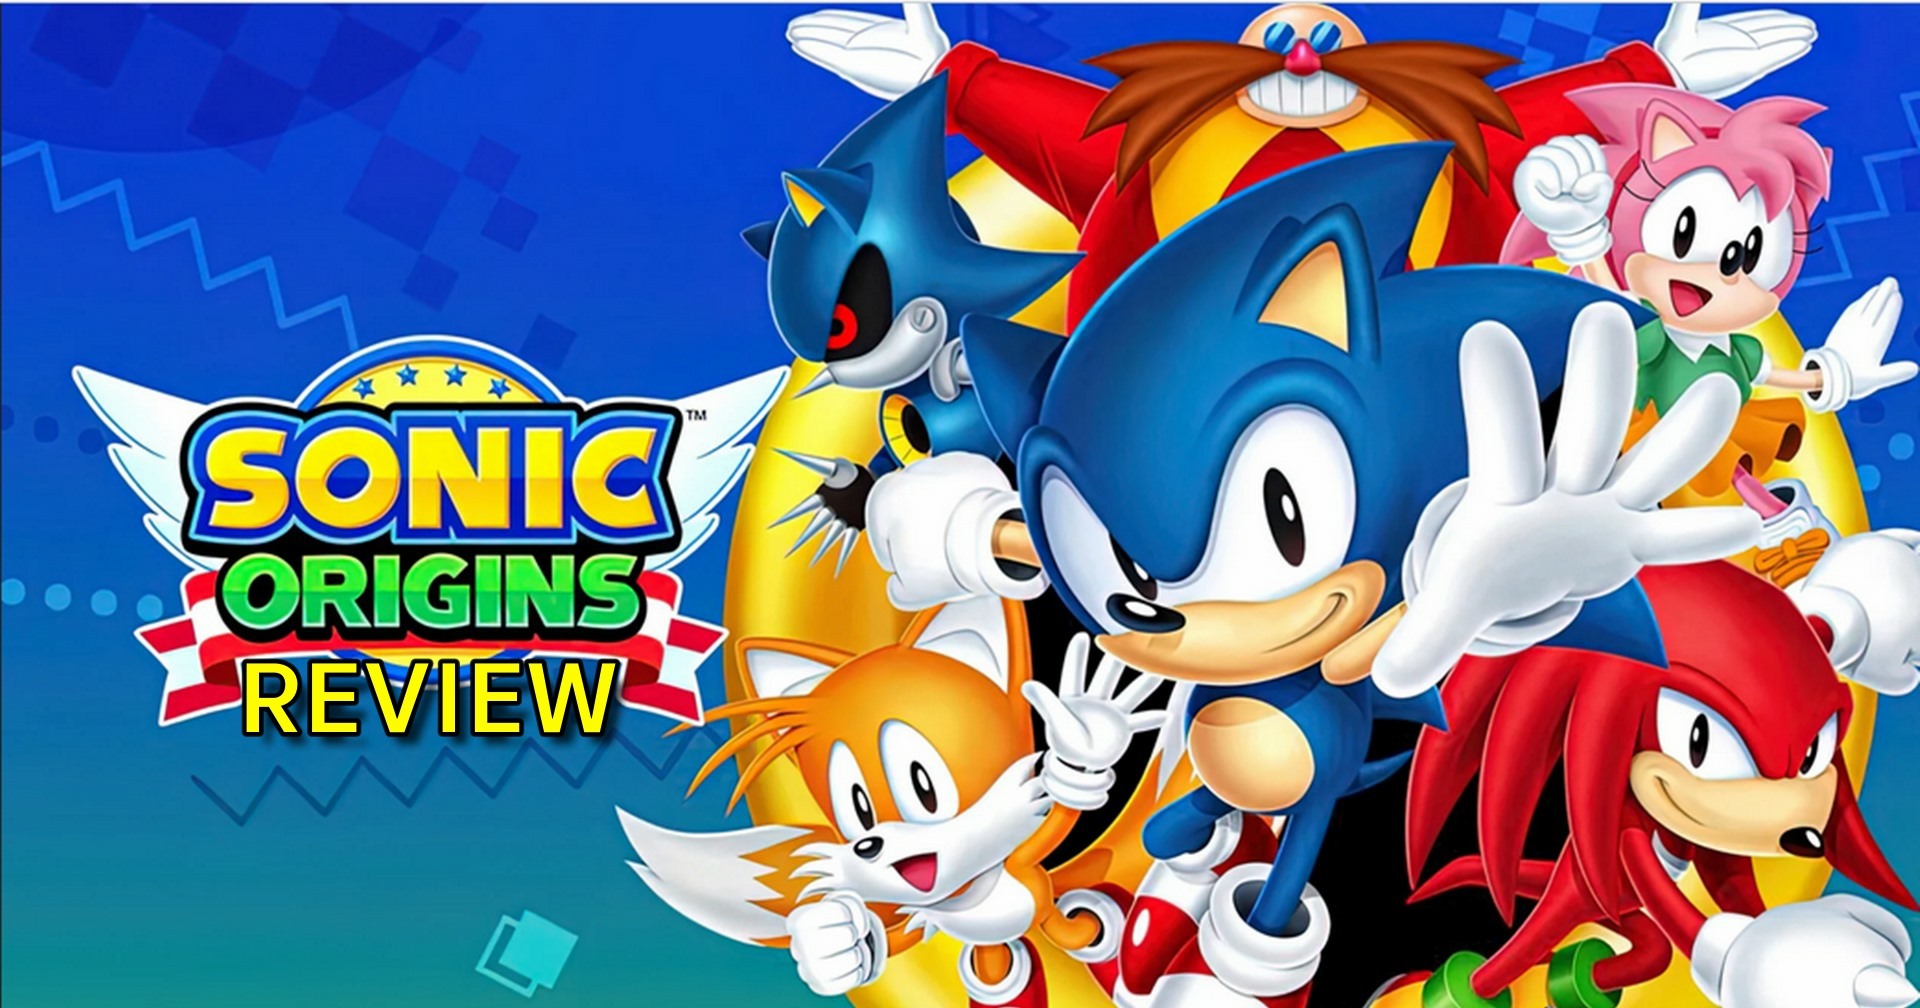 รีวิวเกม Sonic Origins รวมฮิตตำนานเม่นสายฟ้า